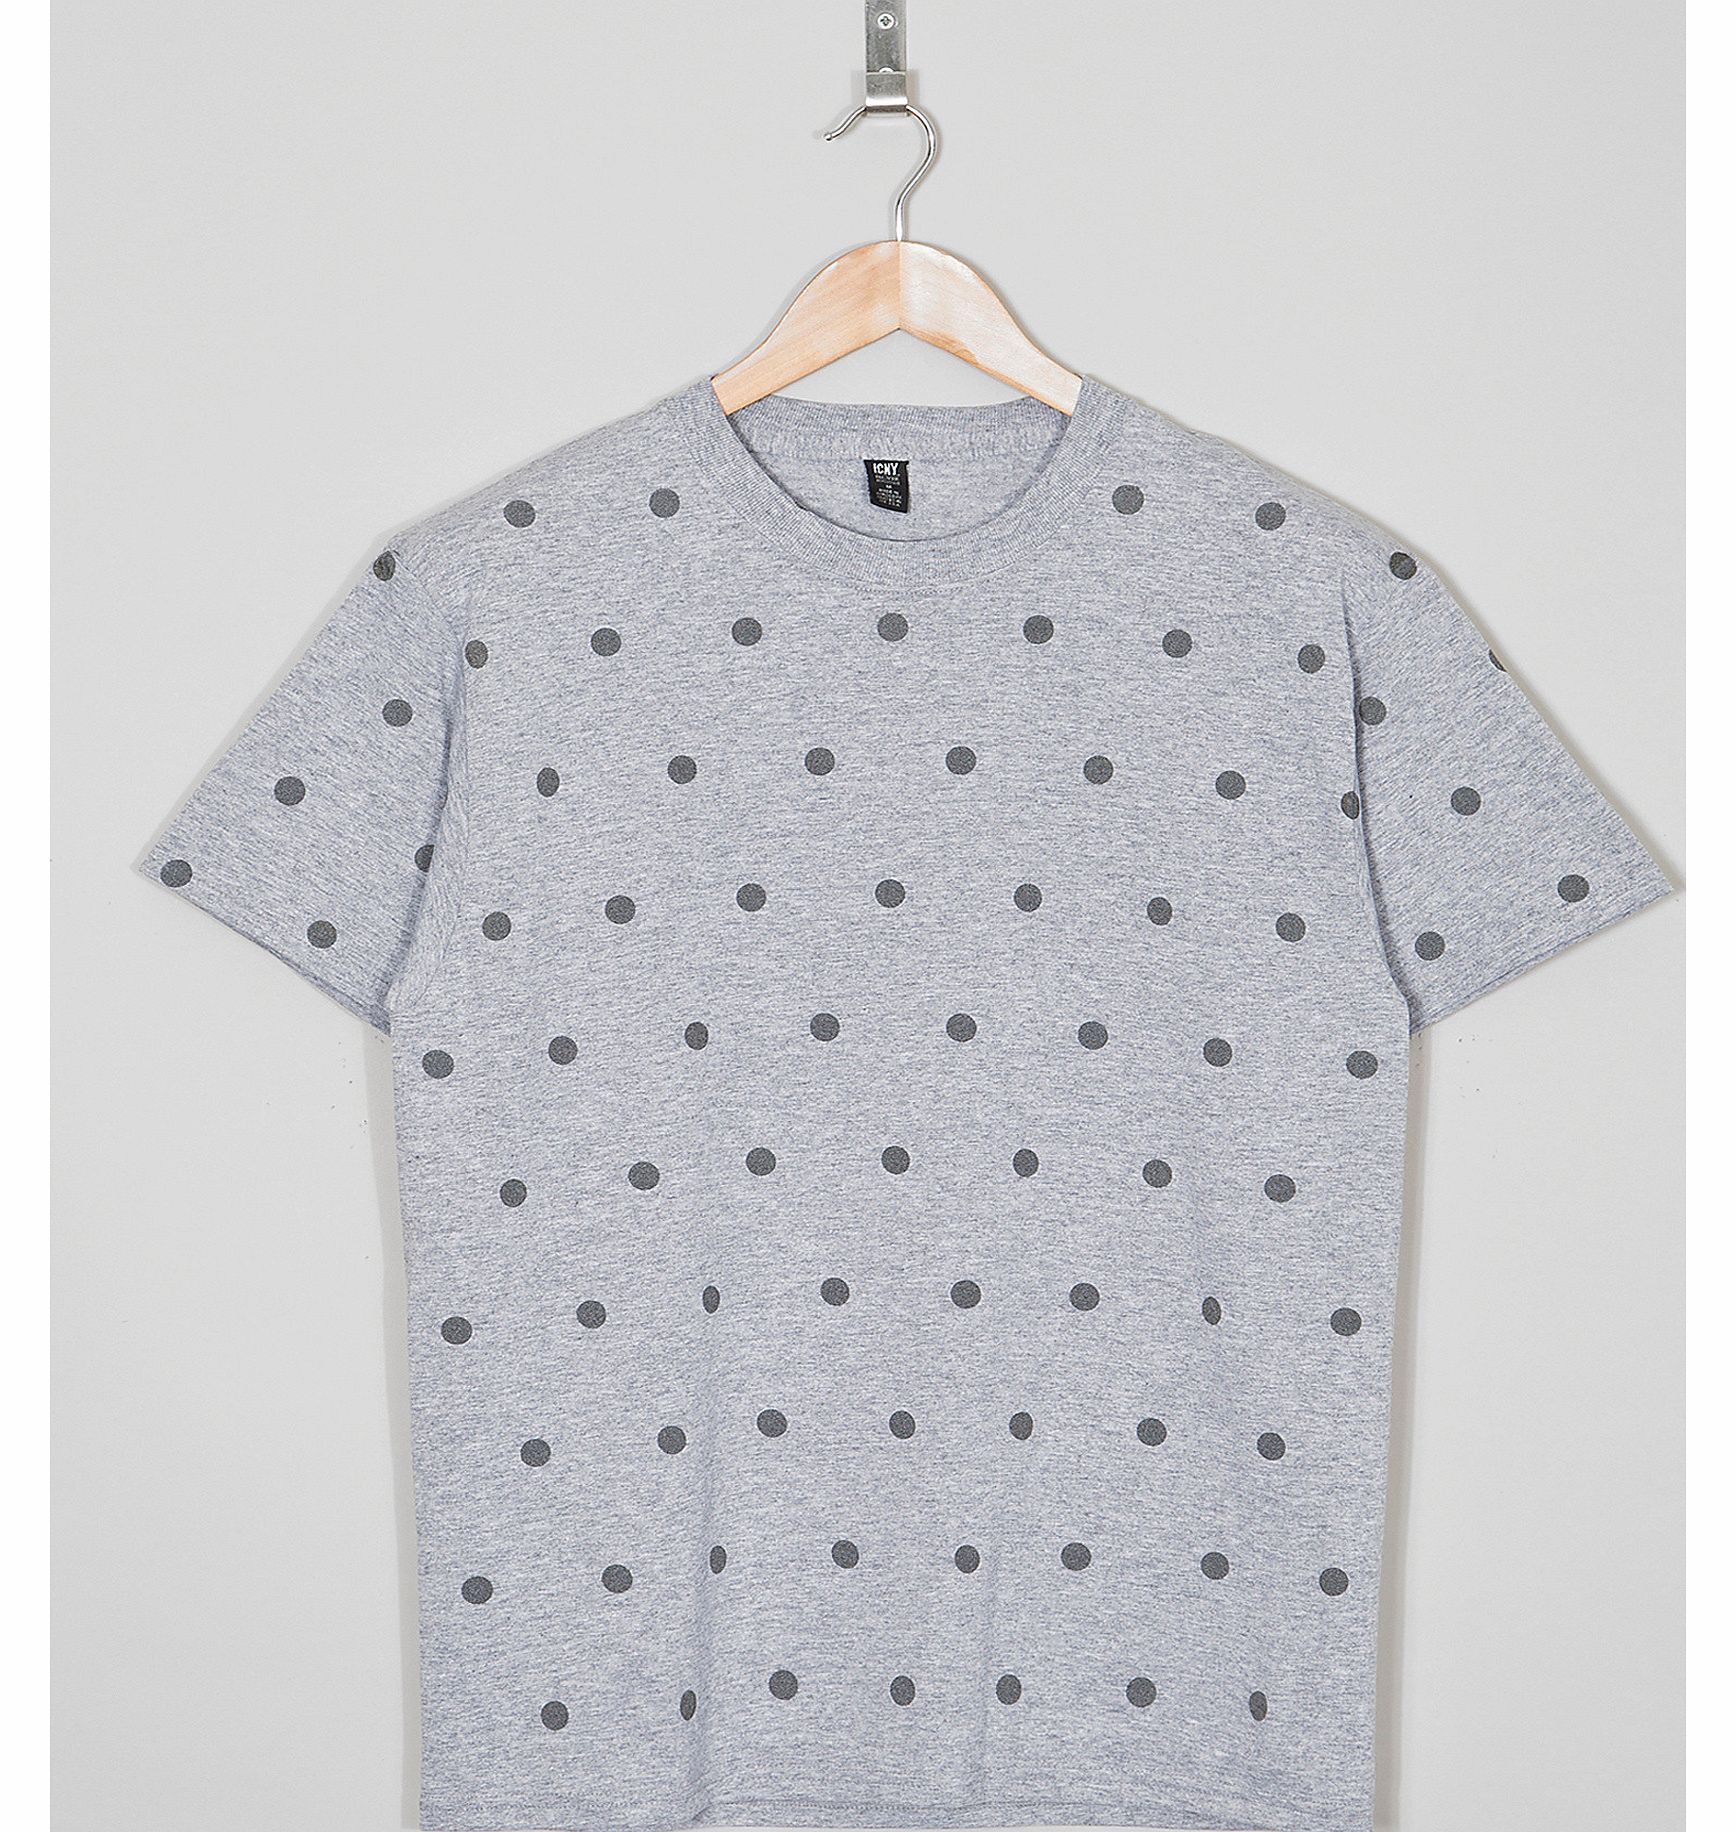 ICNY Polka Dot T-Shirt